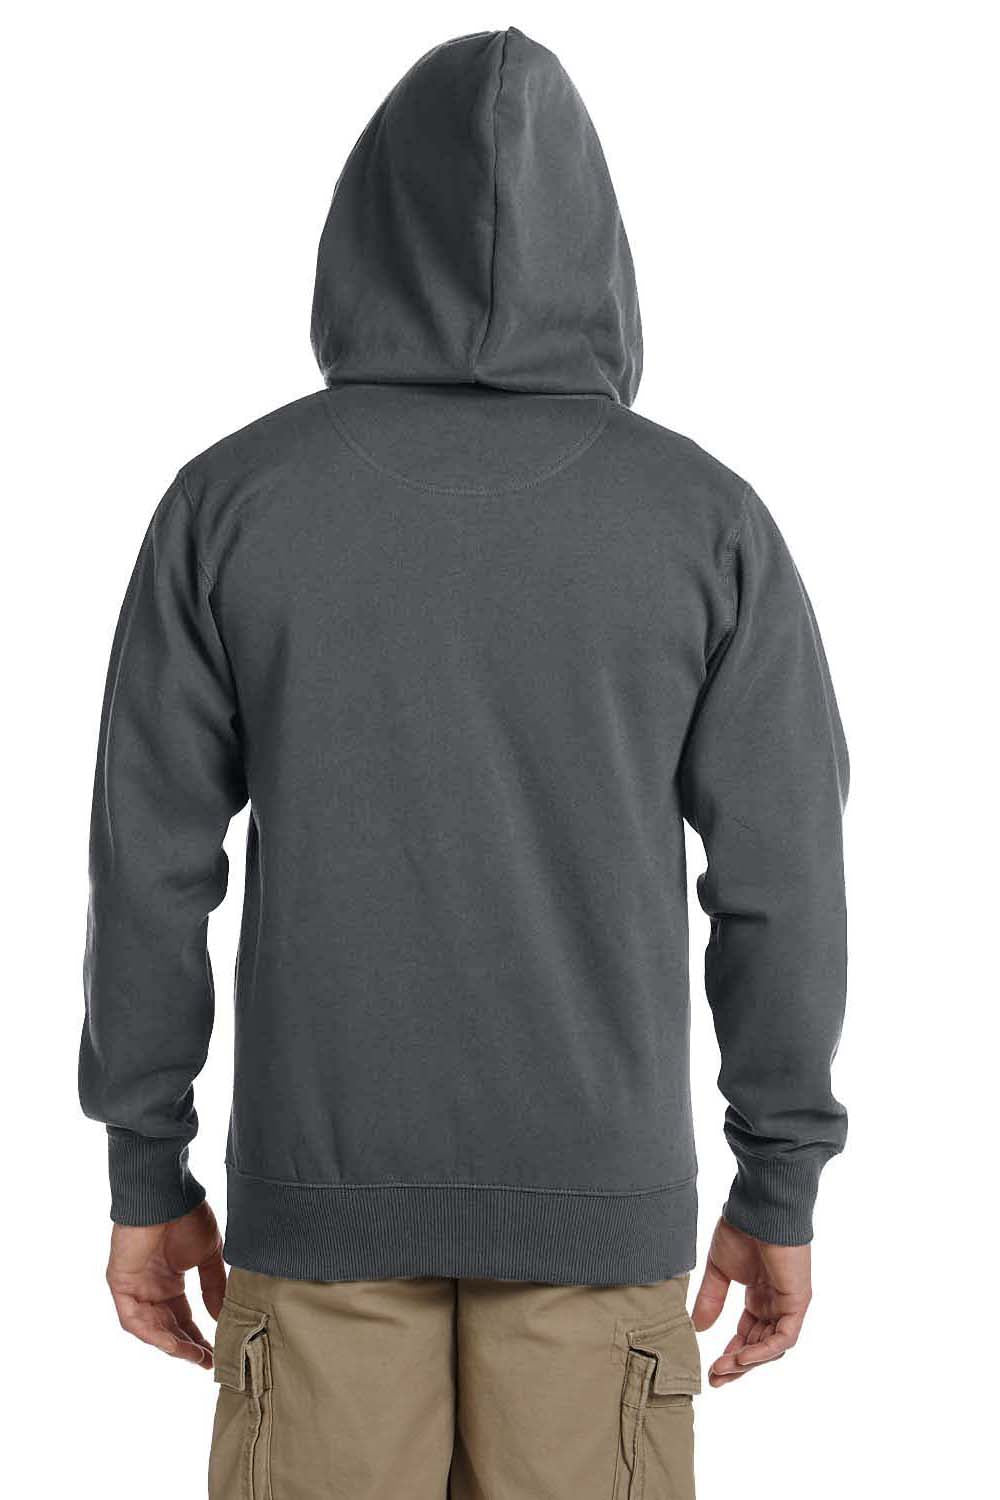 Econscious EC5650 Mens Full Zip Hooded Sweatshirt Hoodie Charcoal Grey Back